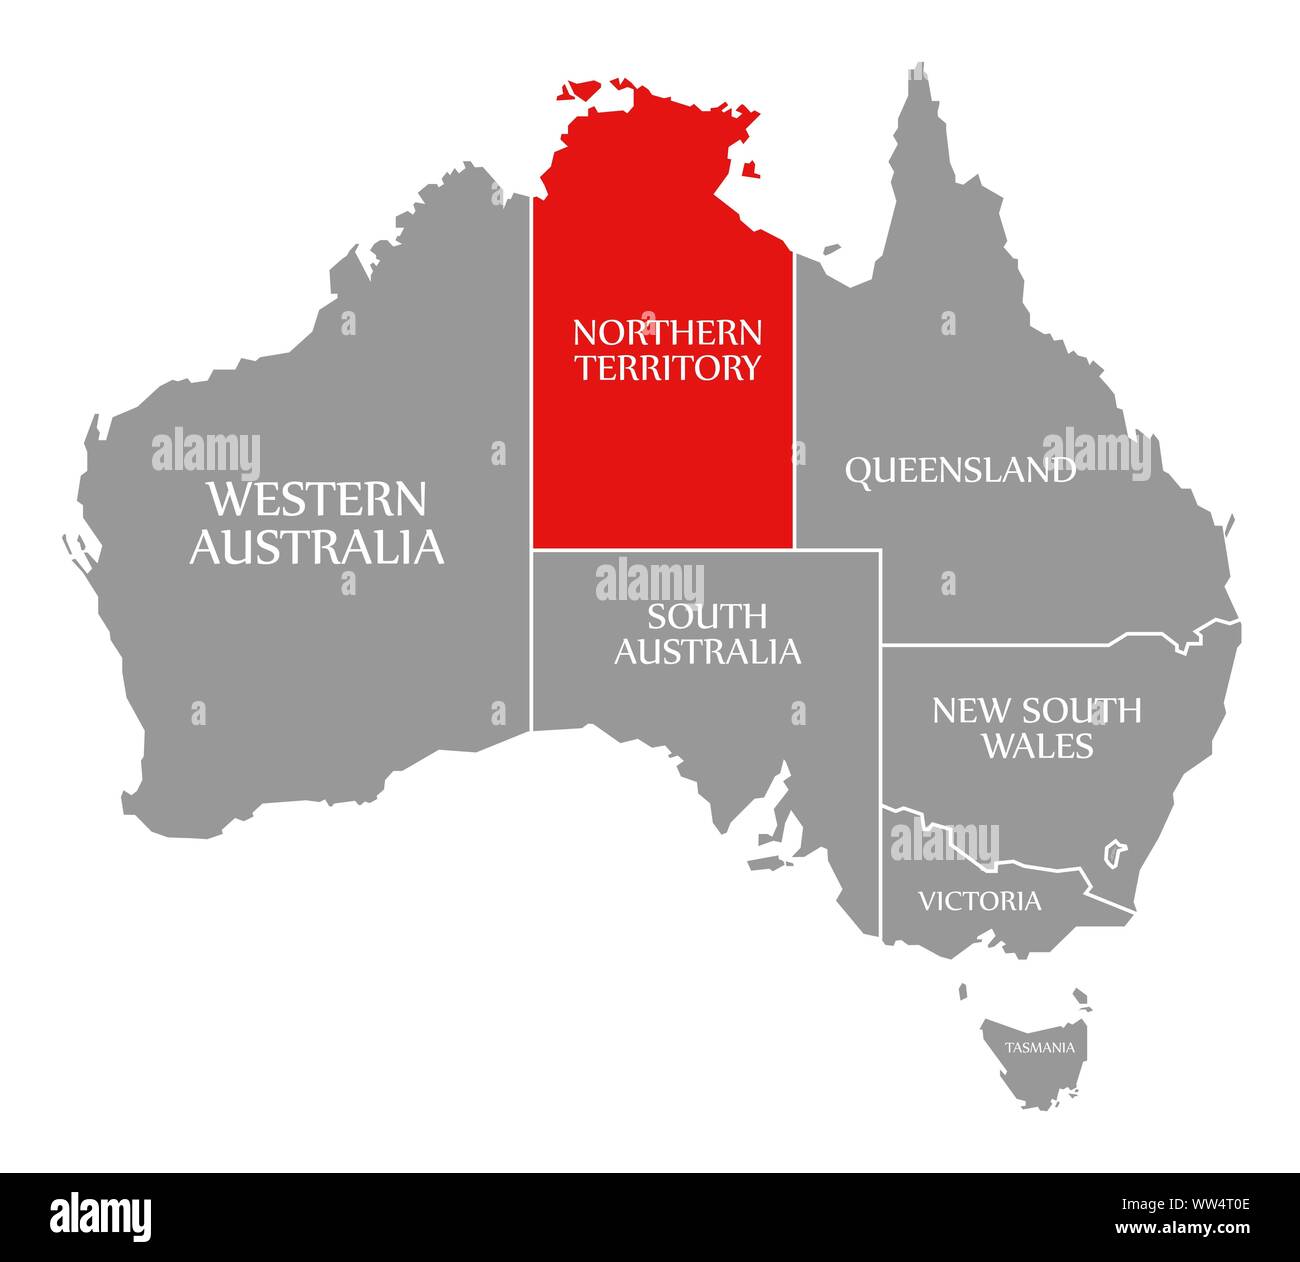 Northern Territory resaltada en rojo en el mapa de Australia Foto de stock